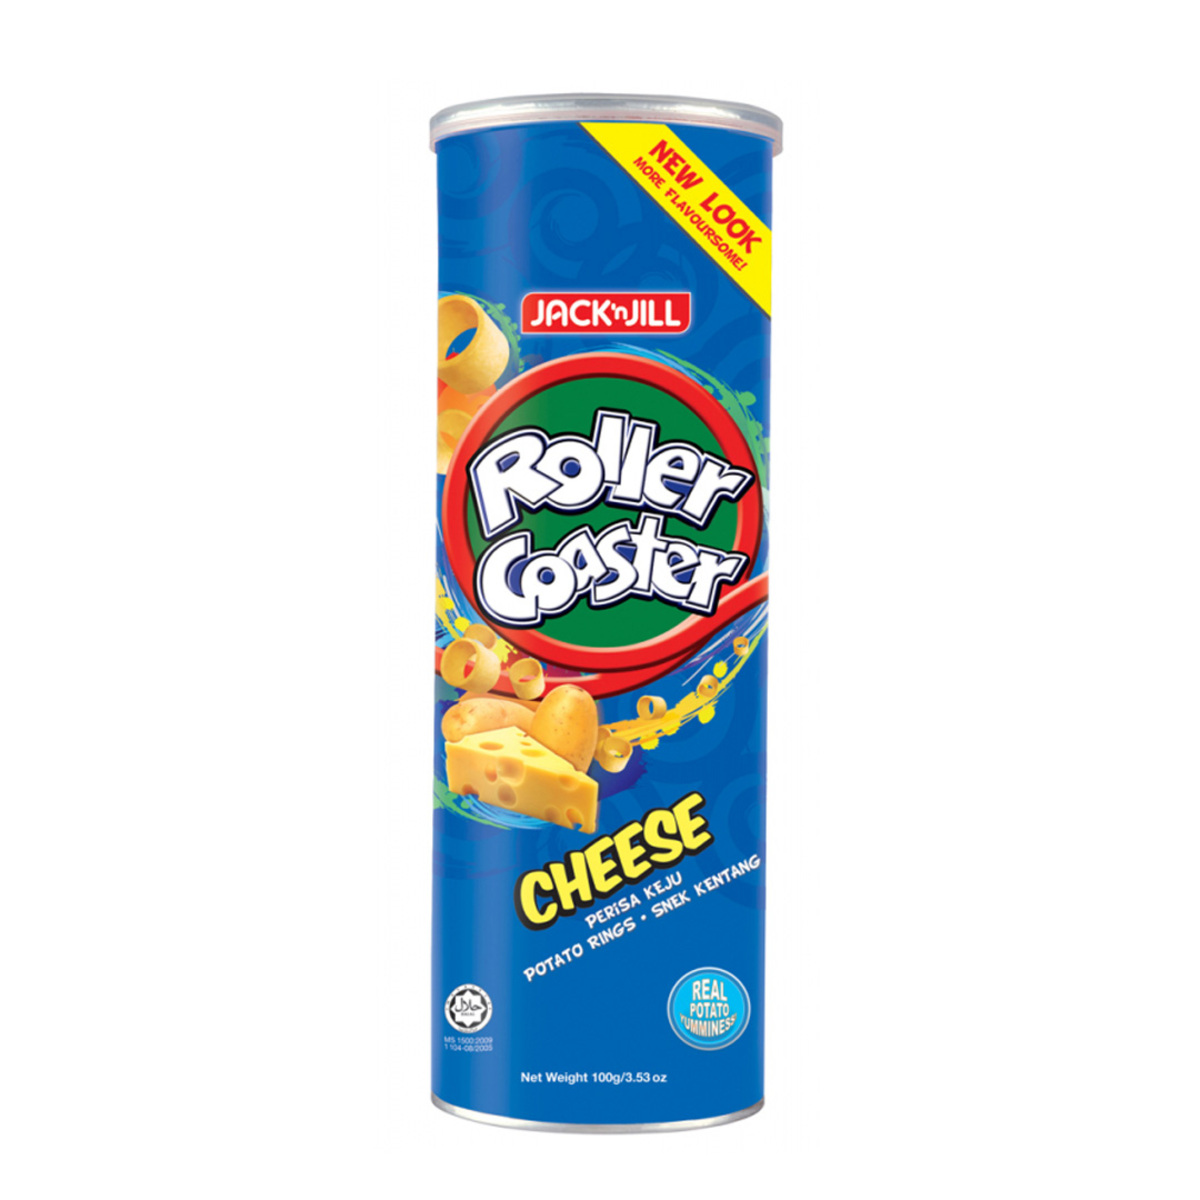 Jack & Jill Roller Coaster Cheese 100g